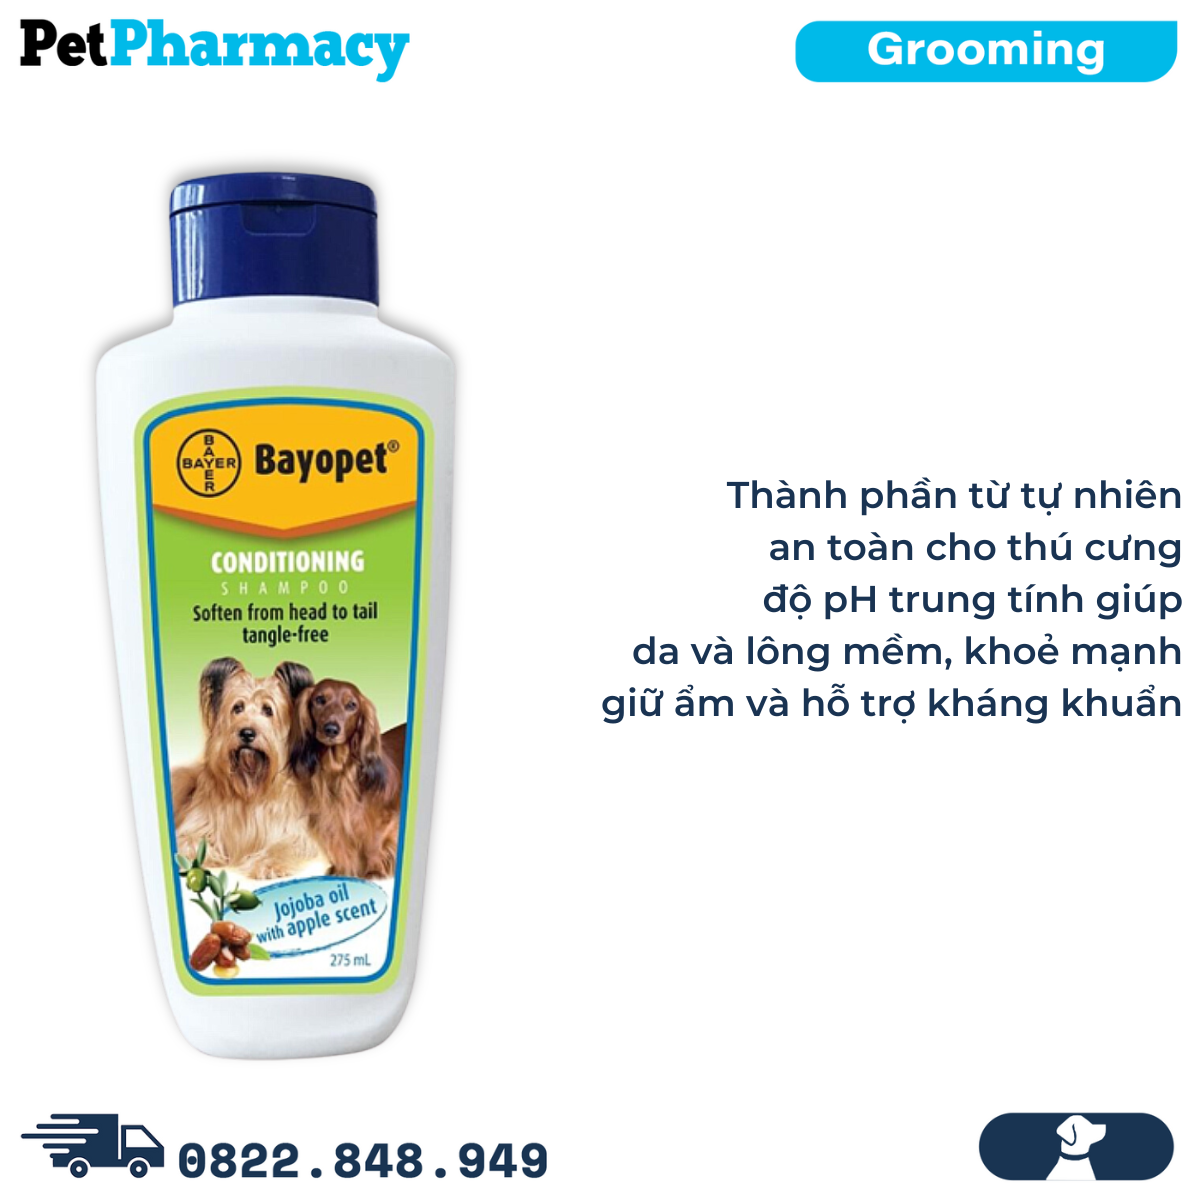  Sữa tắm Bayer Bayopet Conditioning Shampoo 275ml - Chiết xuất từ dầu Jojoba, mượt lông, ngừa xơ rối 